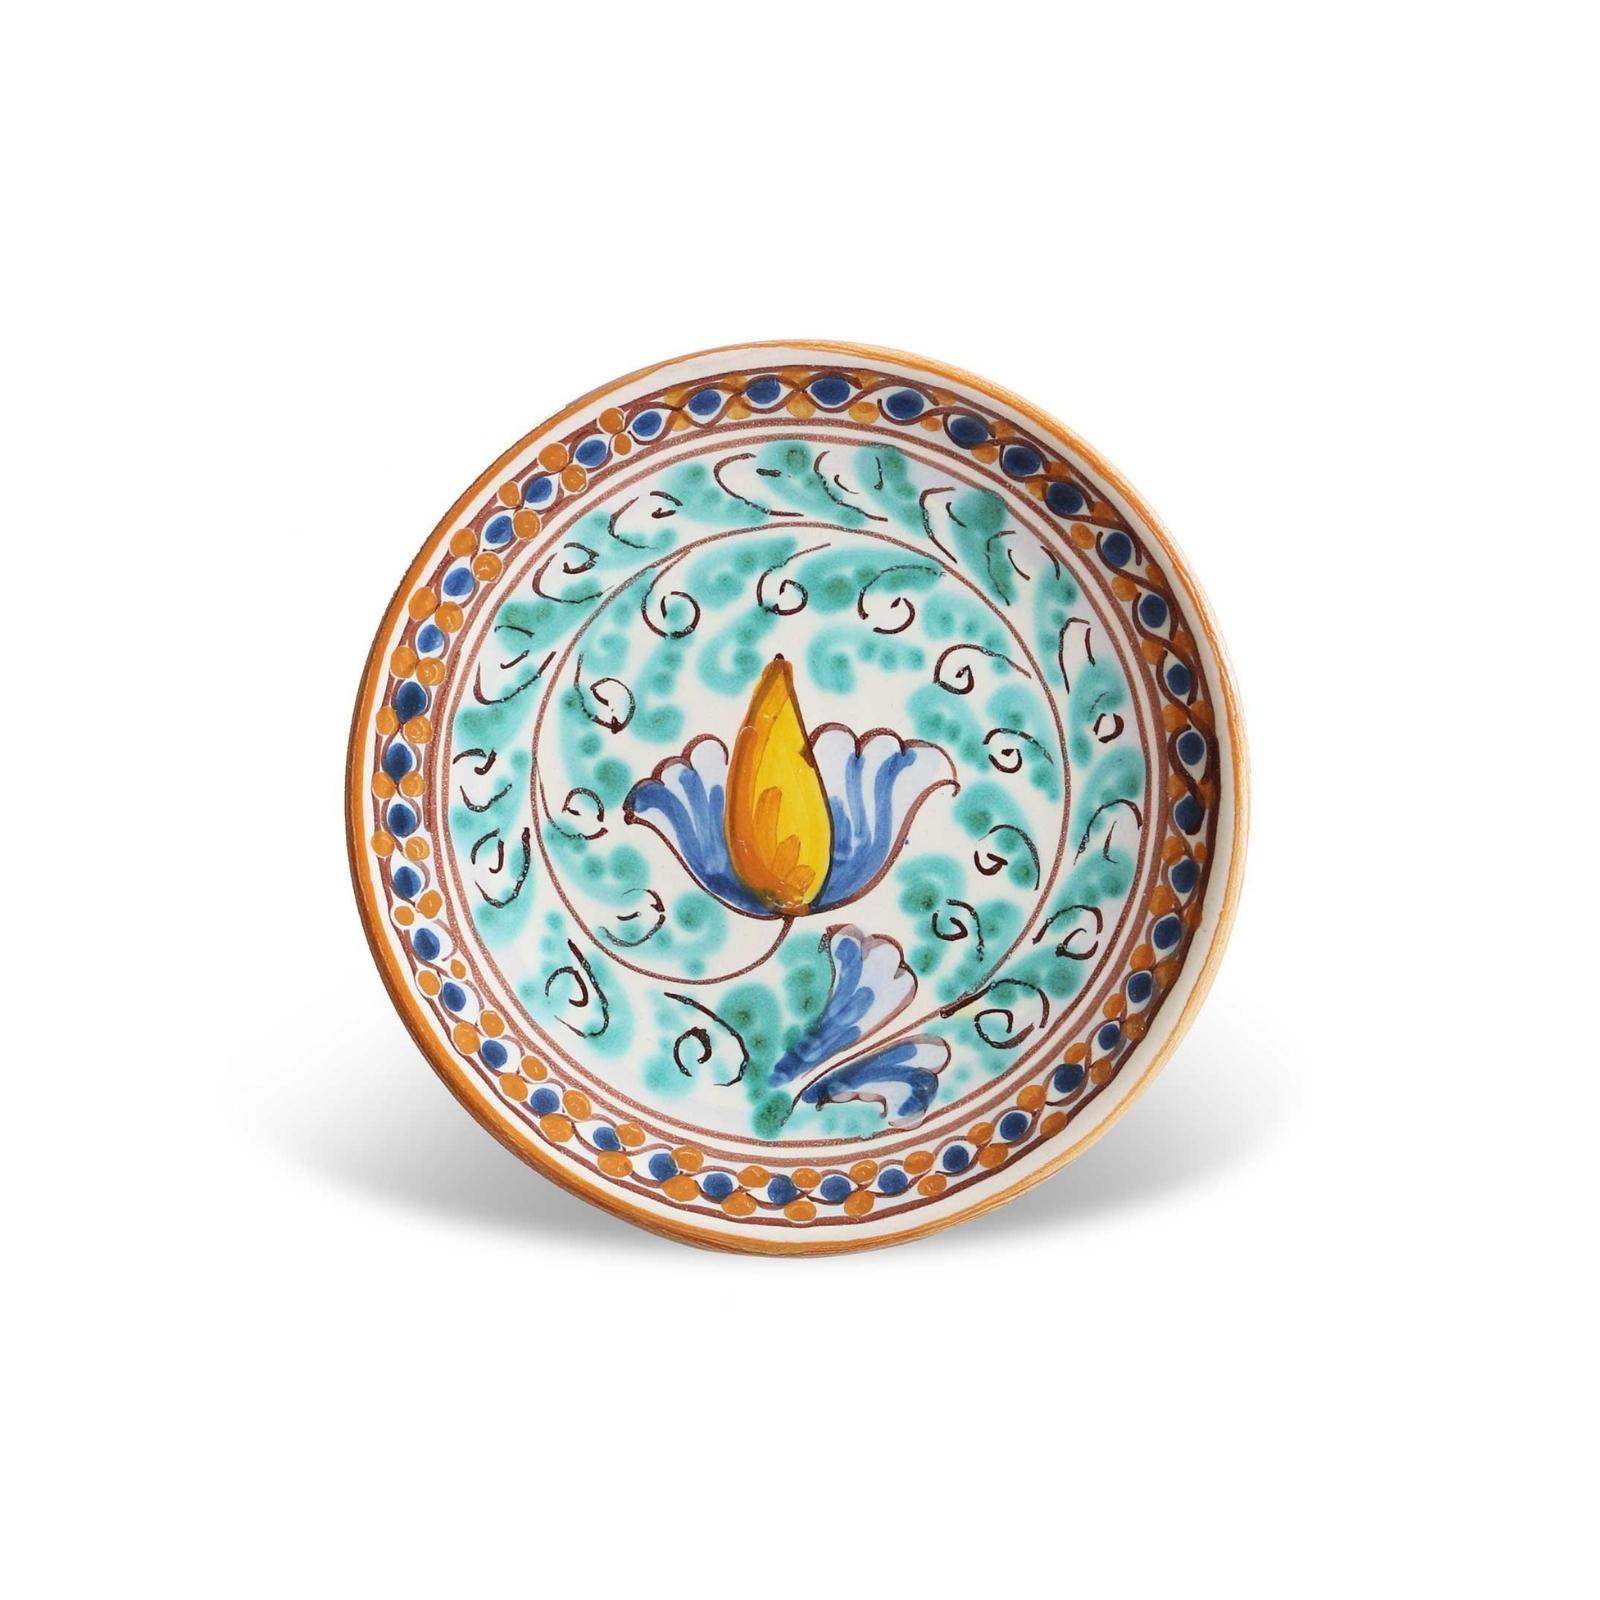 Small plate sicilian artistic ceramic – Ispica